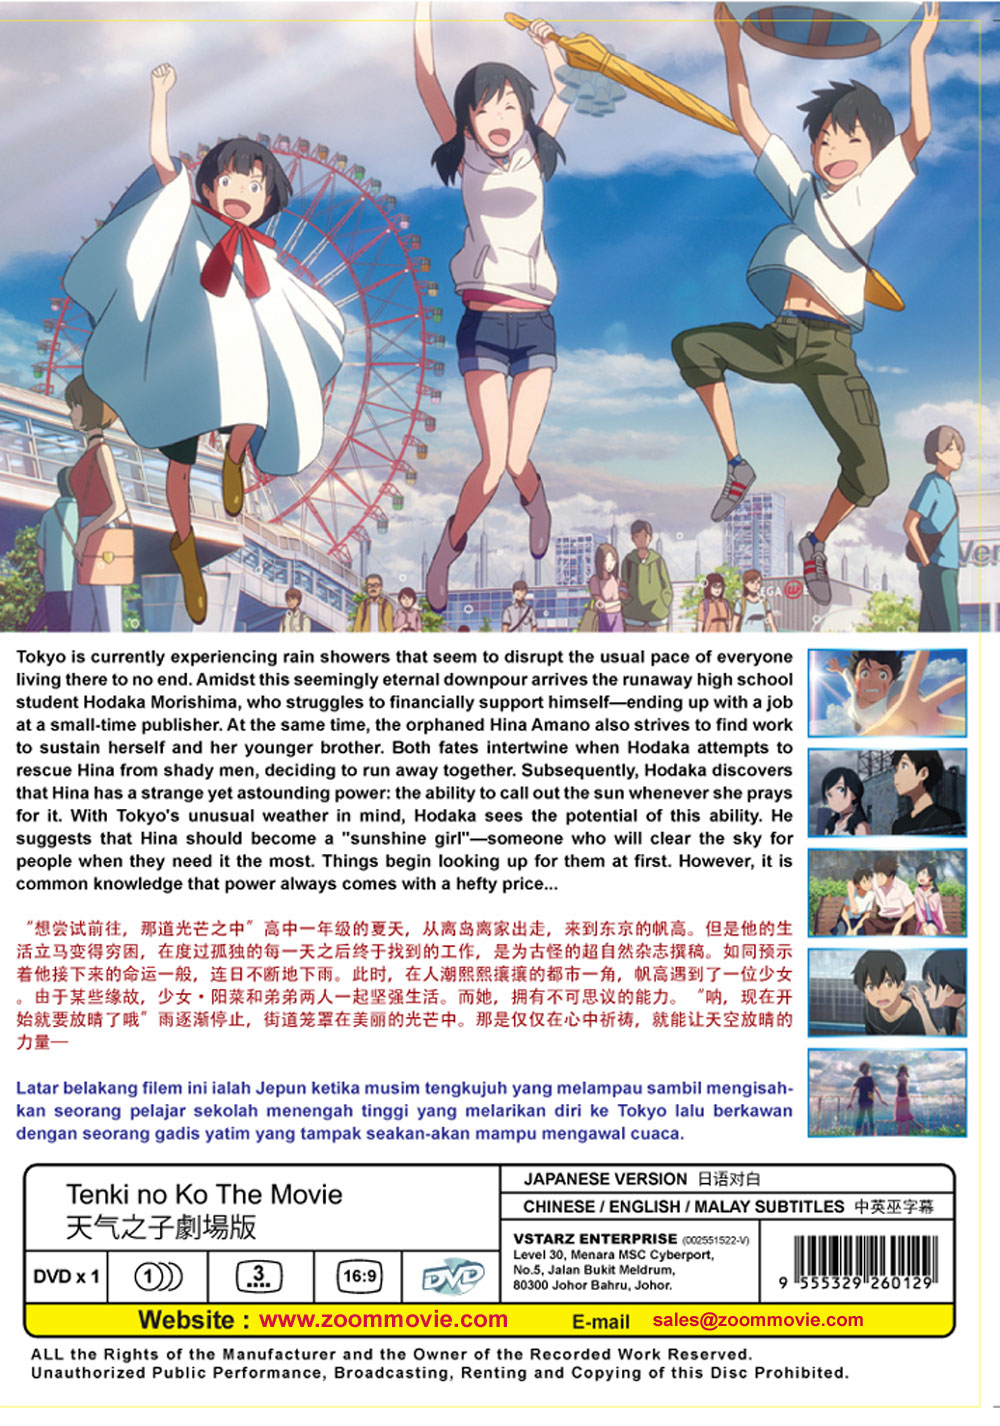 Tenki no Ko The Movie (DVD) (2019) Japanese Anime (English Sub) | US $8.95